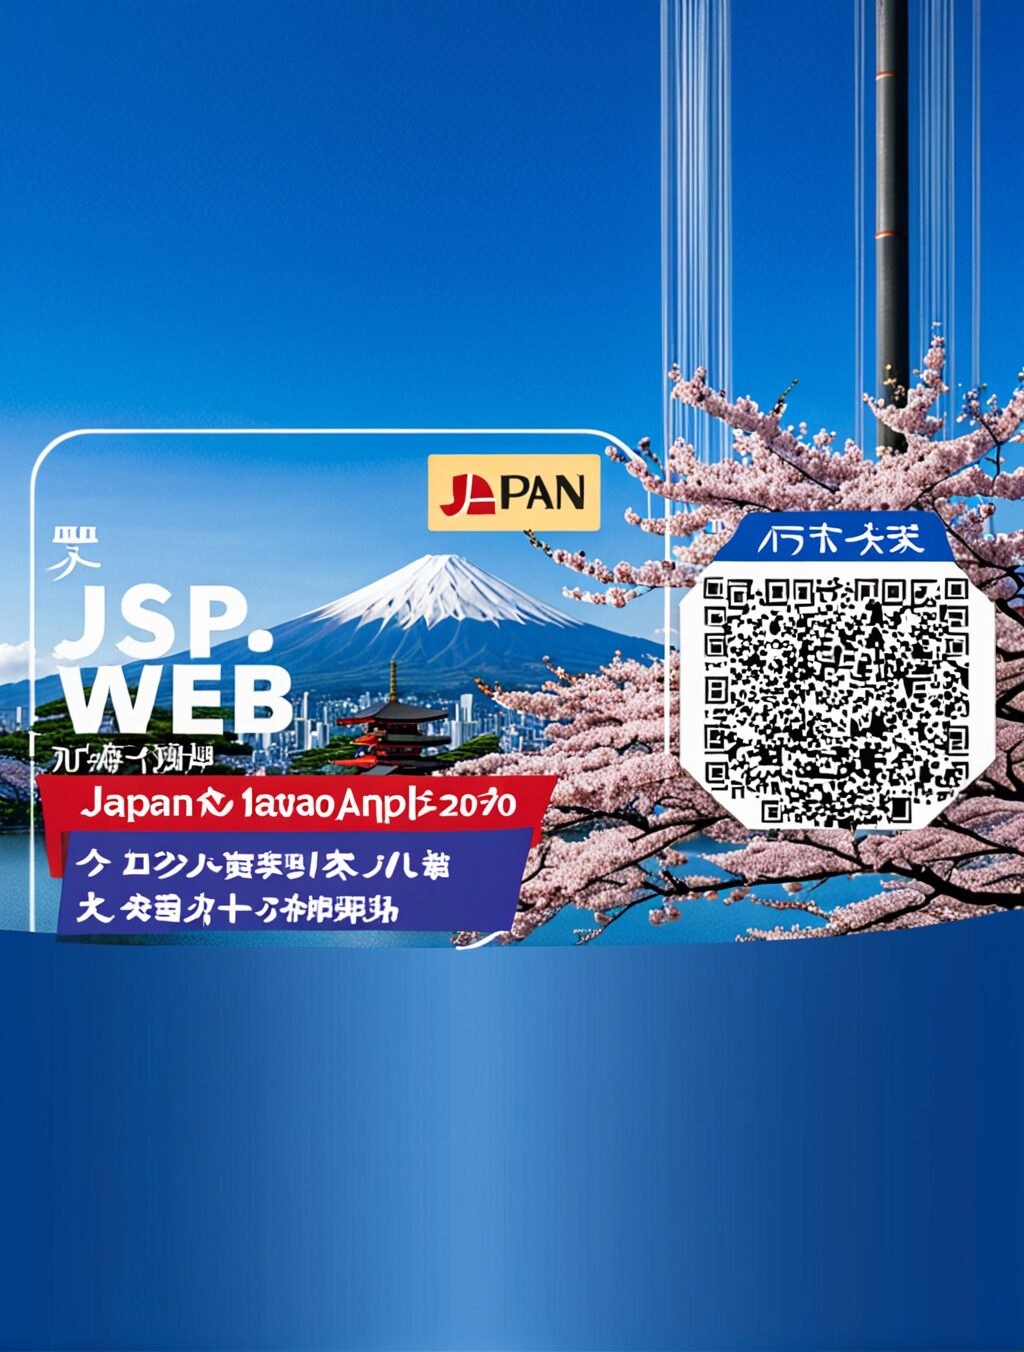 visit japan web 必要か 外国人